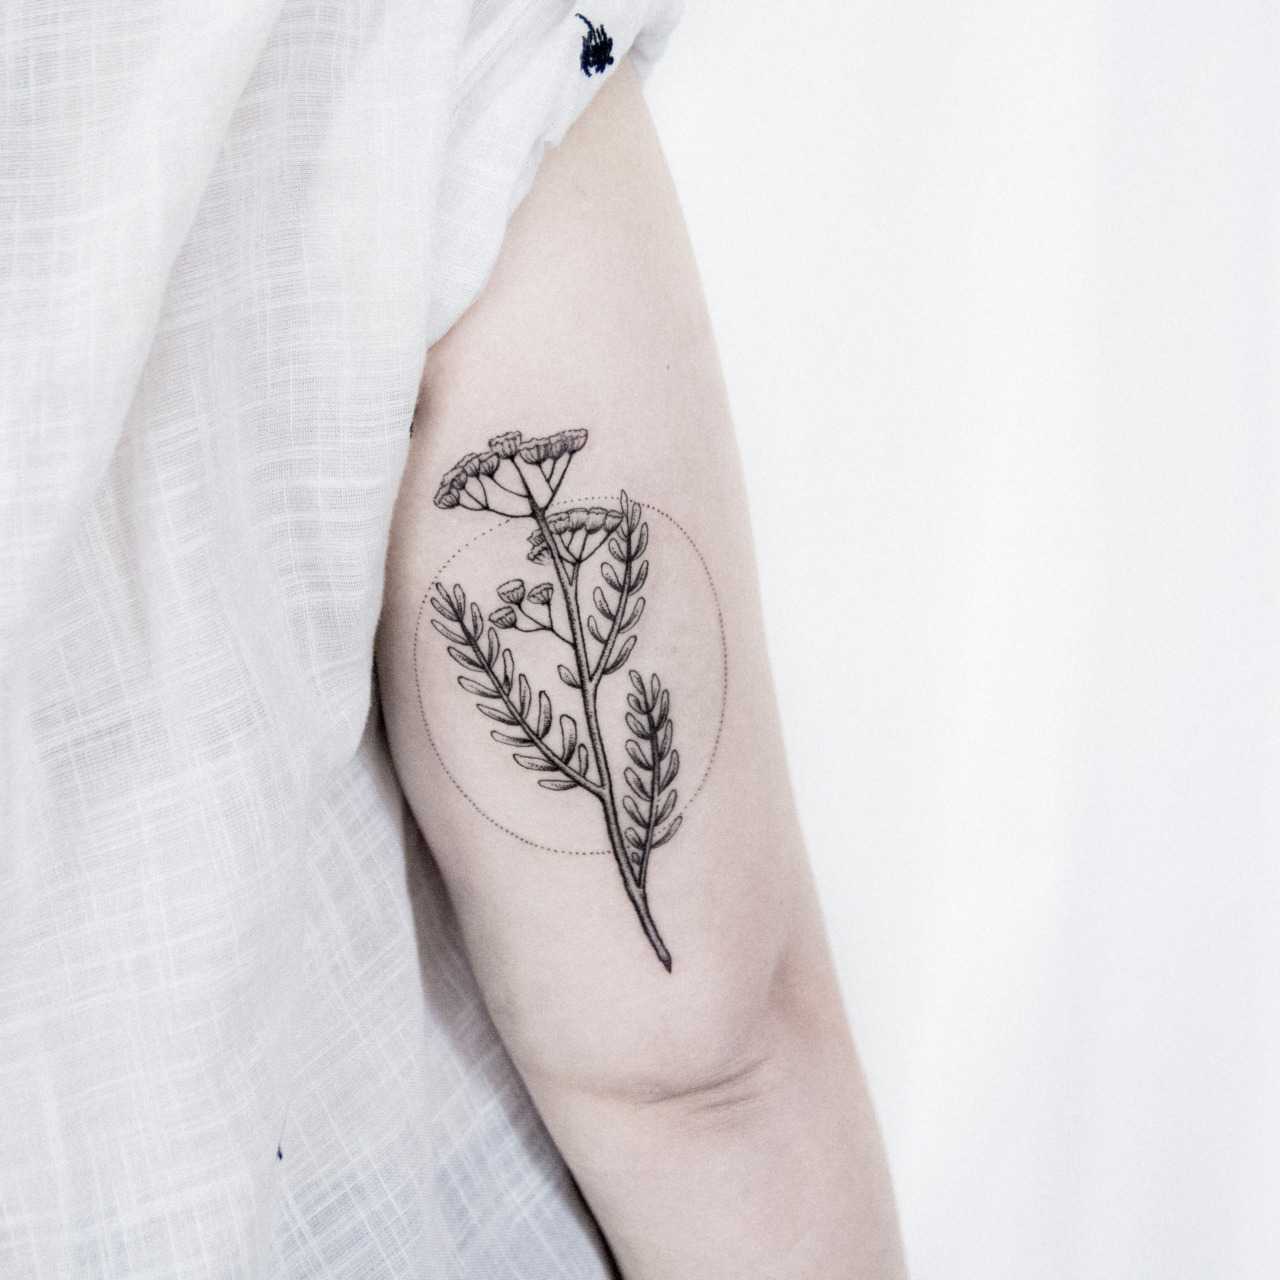 Minimalist plant tattoo by Dogma Noir